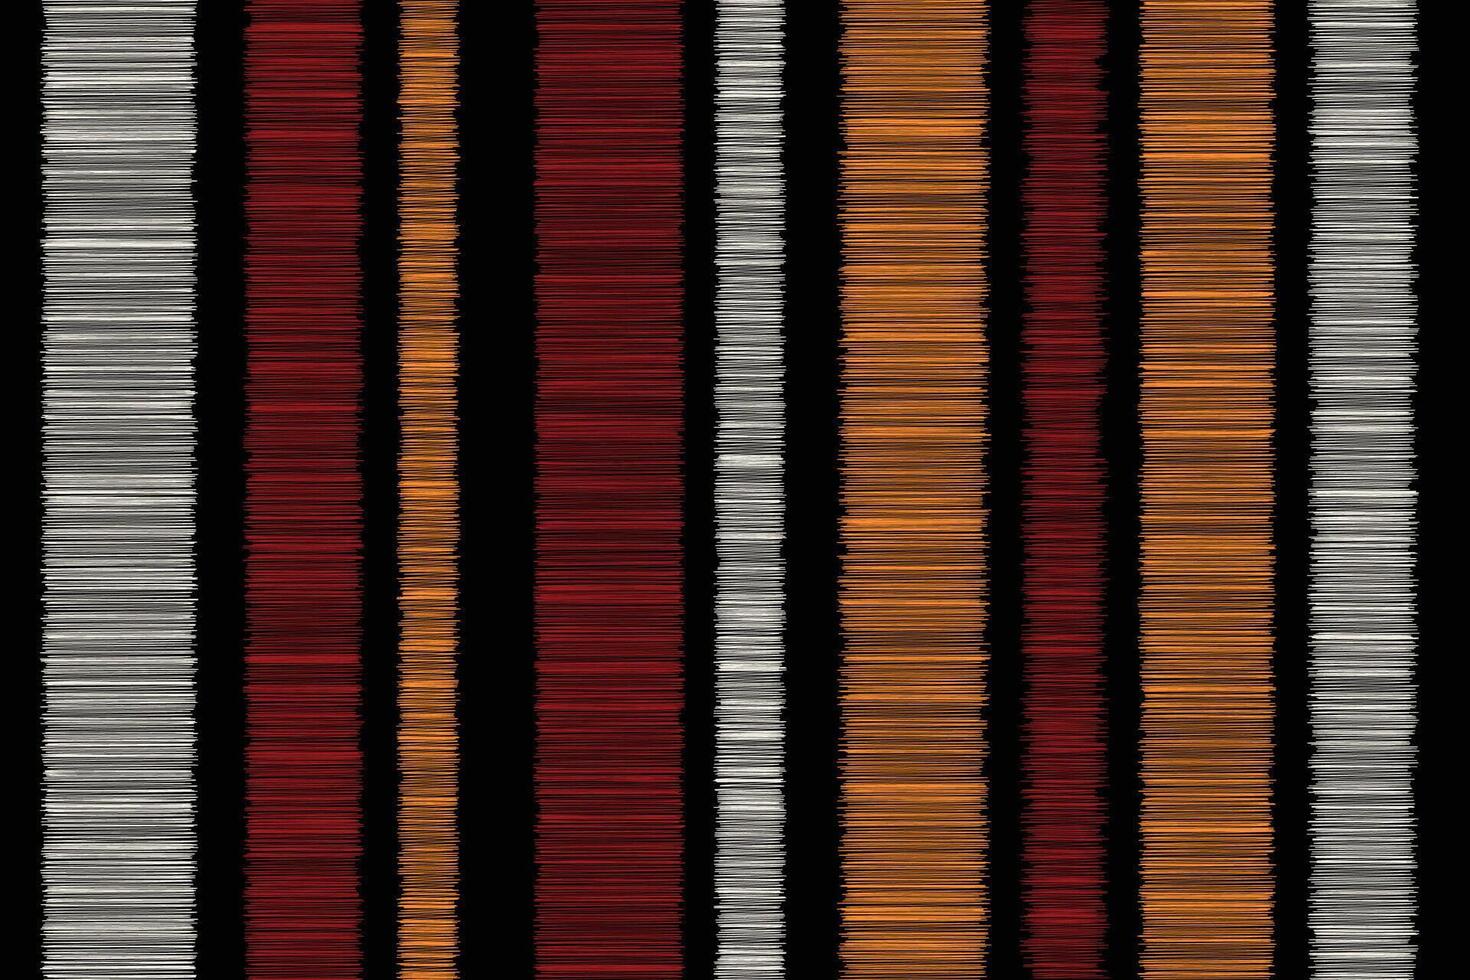 nahtlos süß Ikat Muster Vektor schwarz Hintergrund Stoff Aquarell Streifen süß Streifen rot Weiß Orange bunt Farbe Gitter Streifen Tartan Hintergrund.